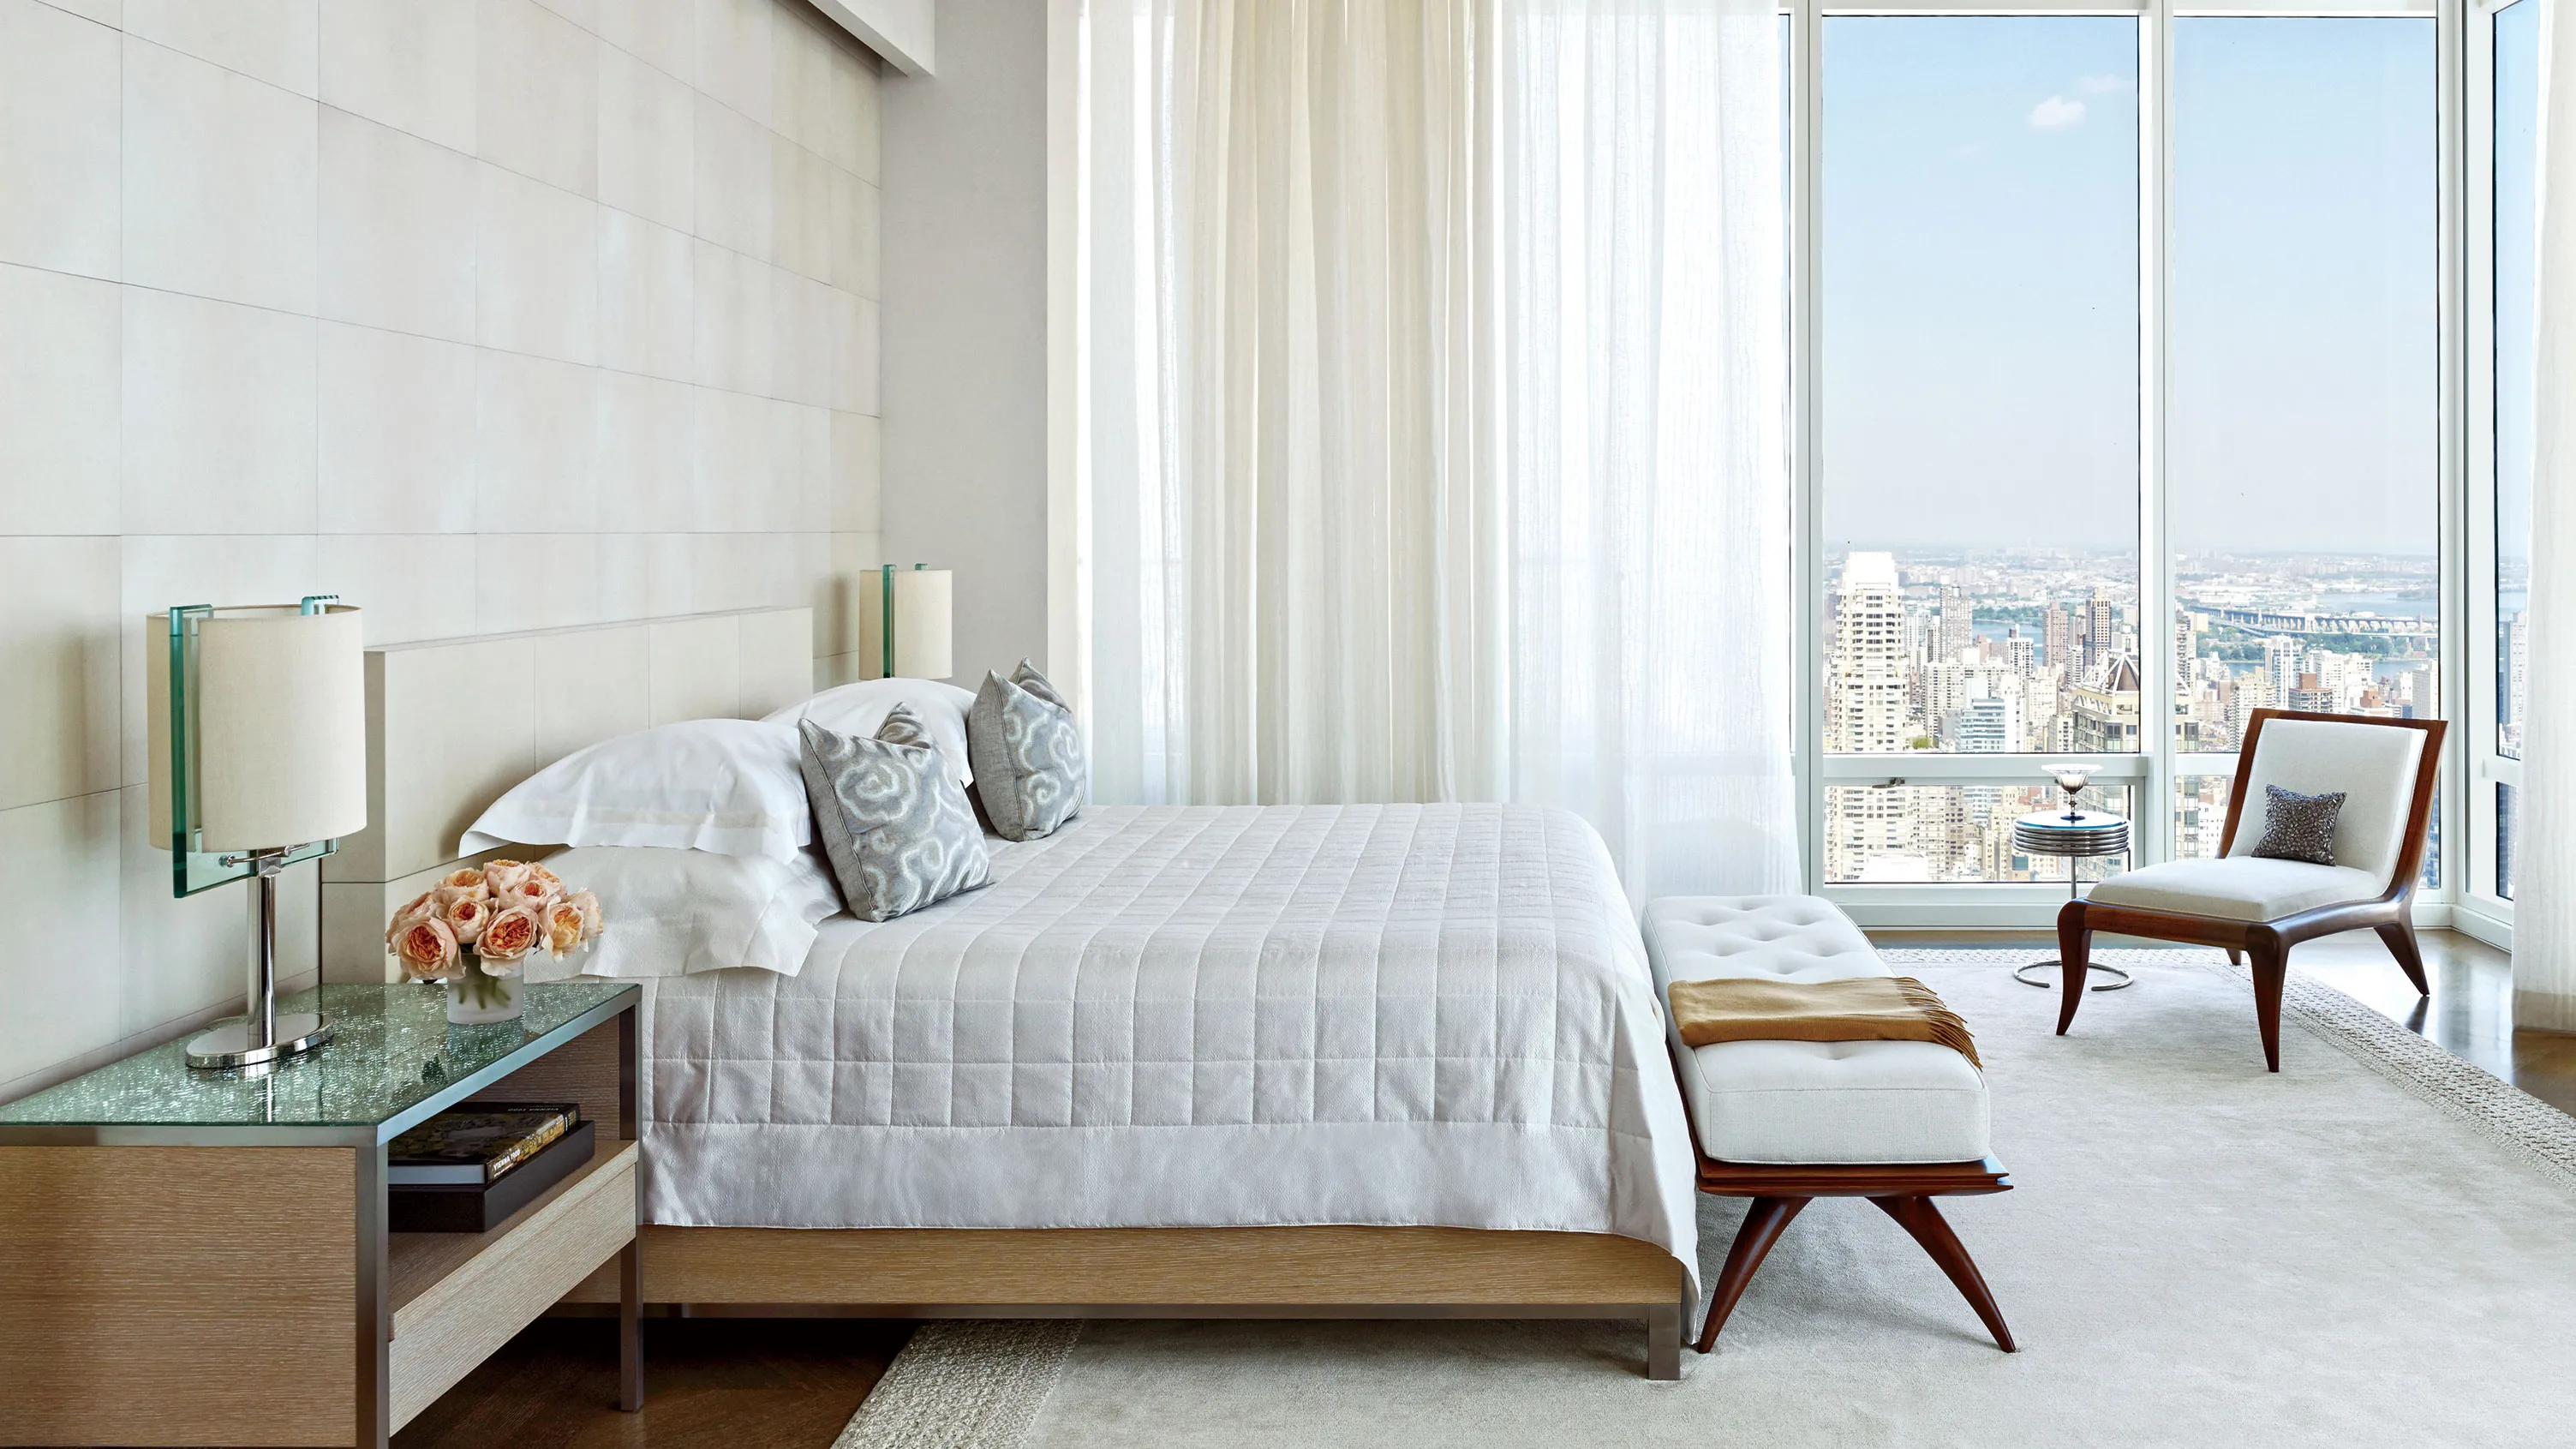 Phòng ngủ sử dụng phần kính lớn tạo ra view ngắm thành phố vô cùng đẹp